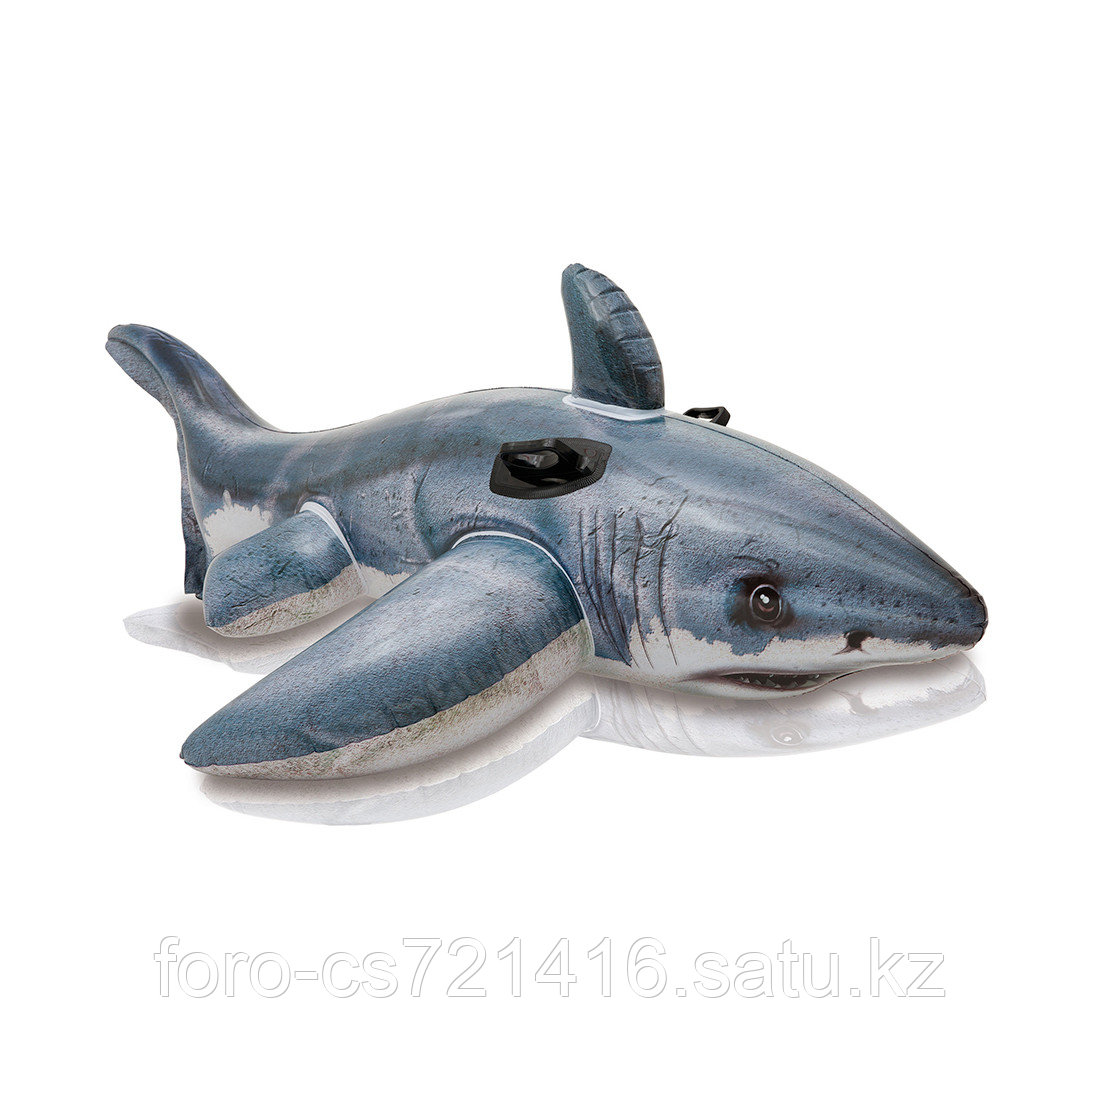 Надувная игрушка Intex 57525NP в форме акулы для плавания, фото 1